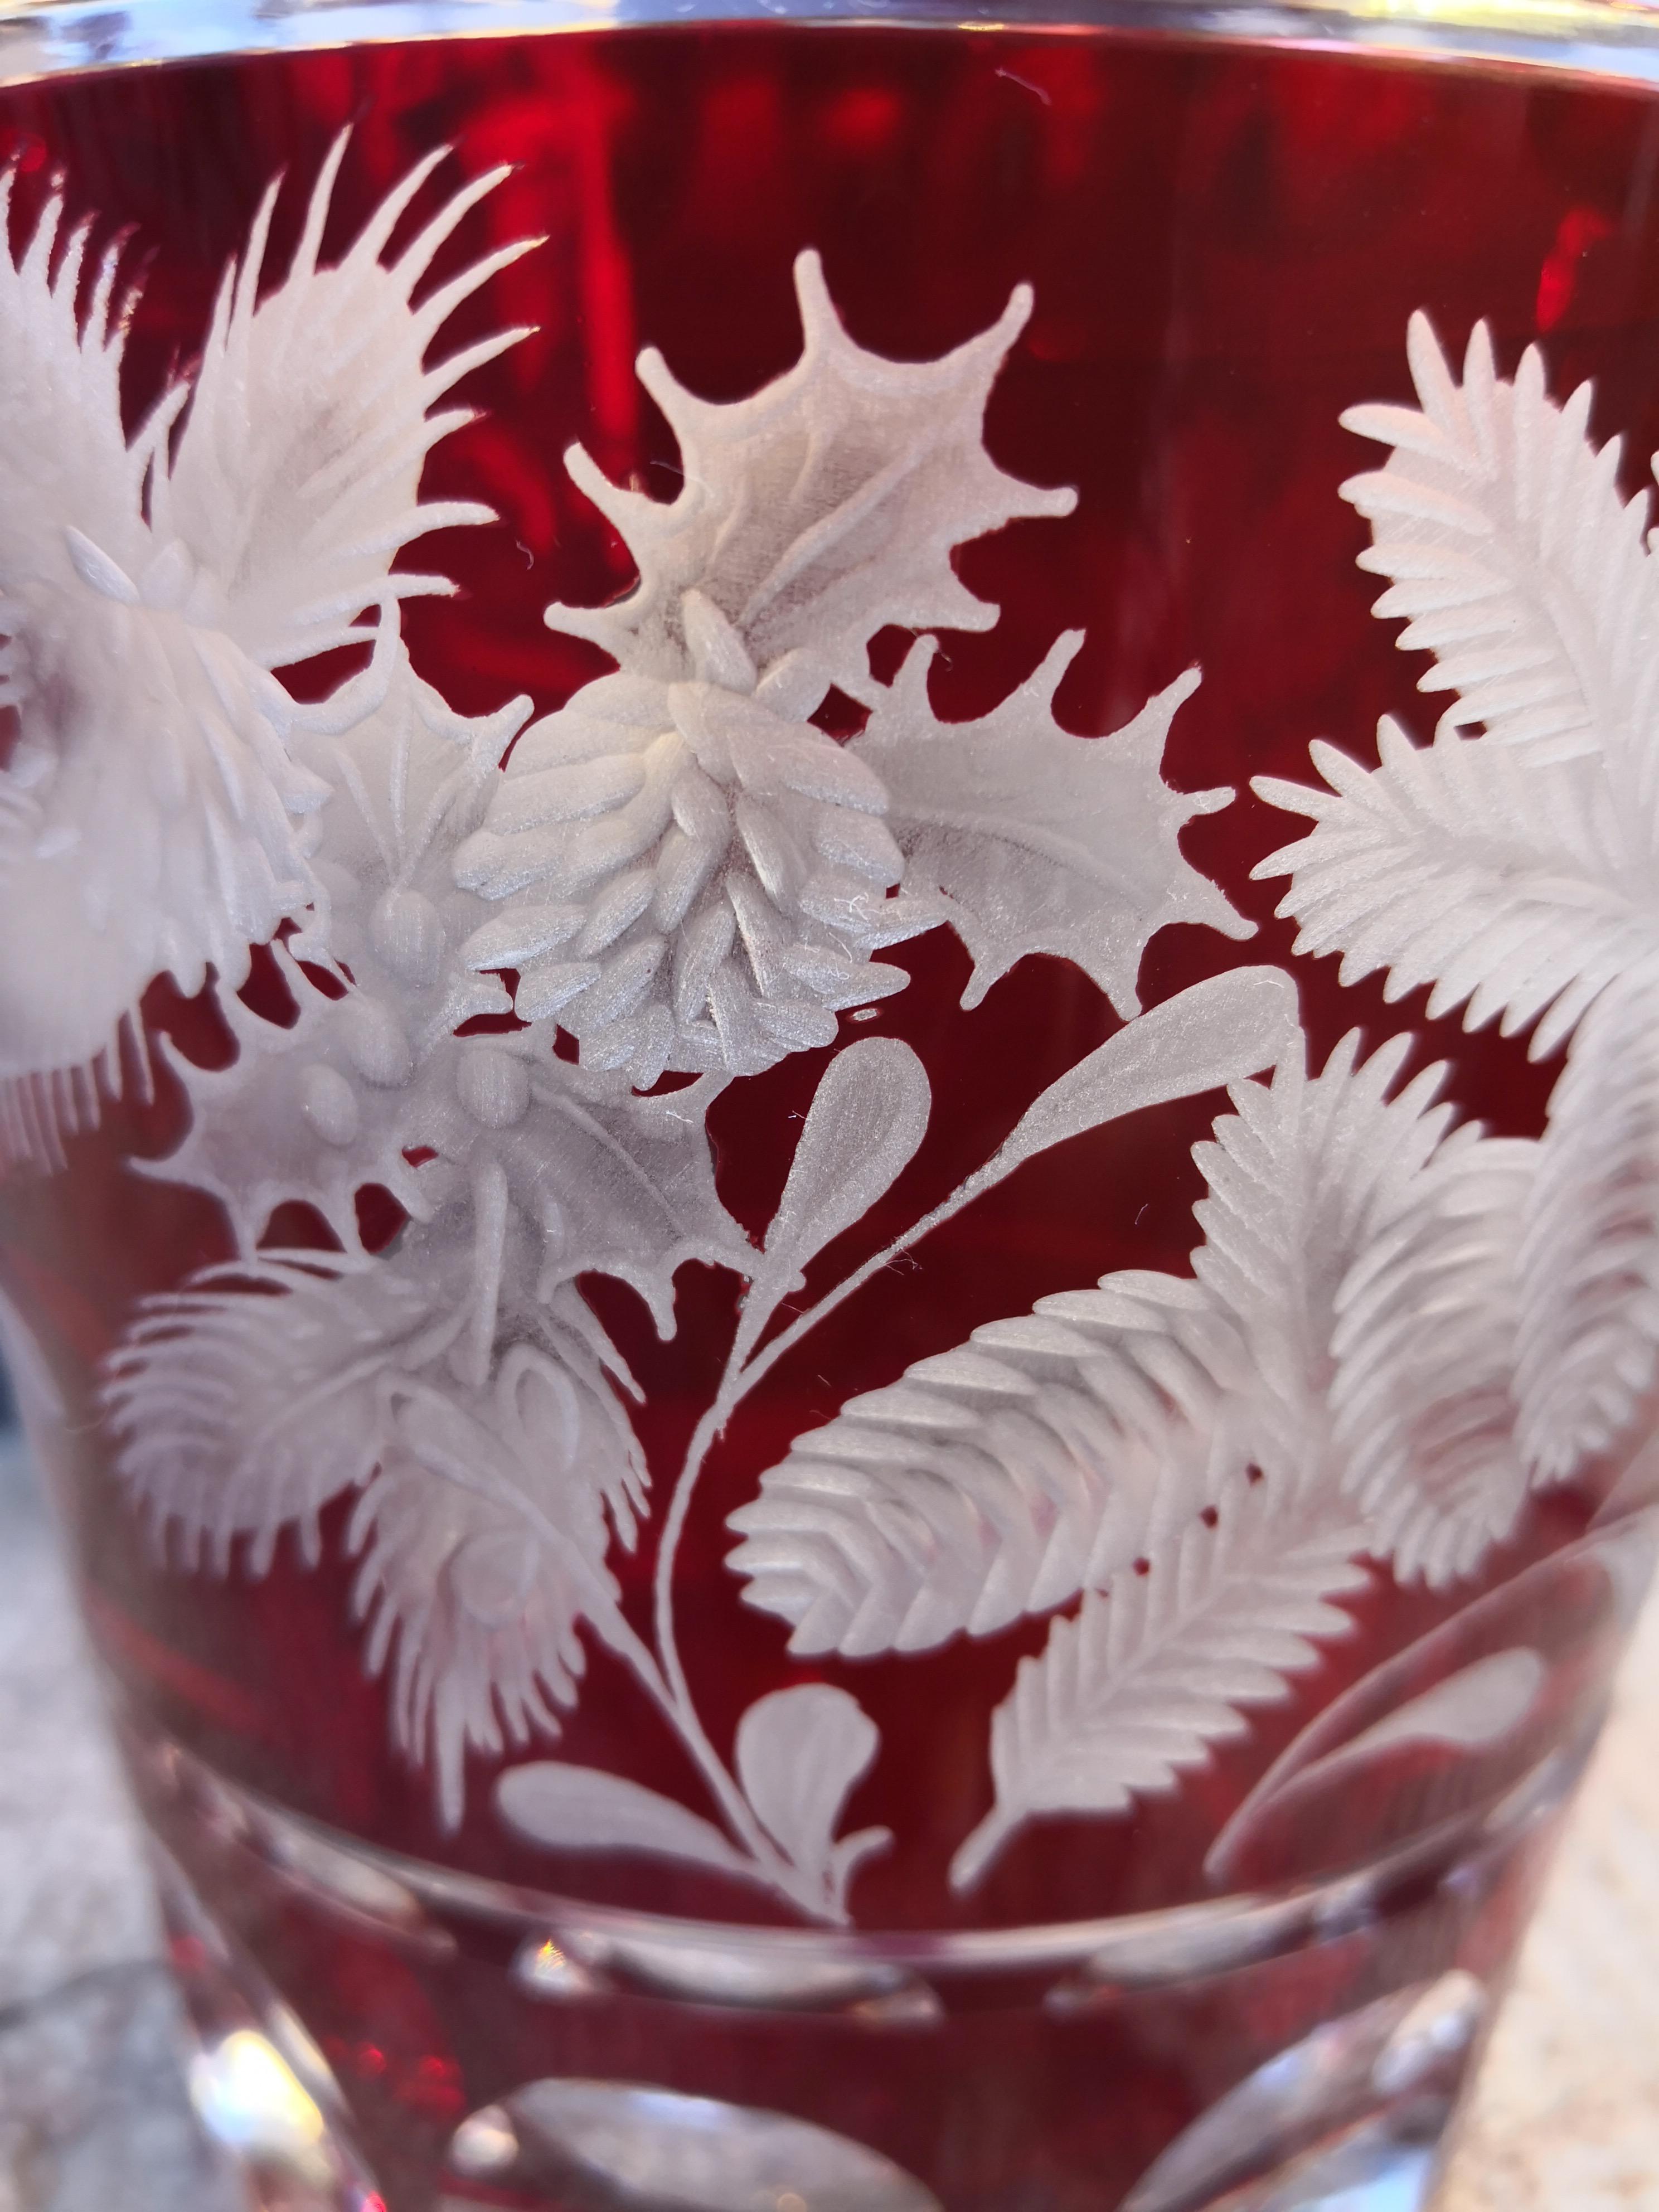 Vase aus mundgeblasenem rotem Kristallglas mit handgeschliffener Weihnachtsgirlande in leuchtender roter Farbe. Die Dekoration besteht aus Stecknadeln und Weihnachtsblumen rundherum. Komplett mundgeblasen und handgraviert in Bayern Deutschland. Das